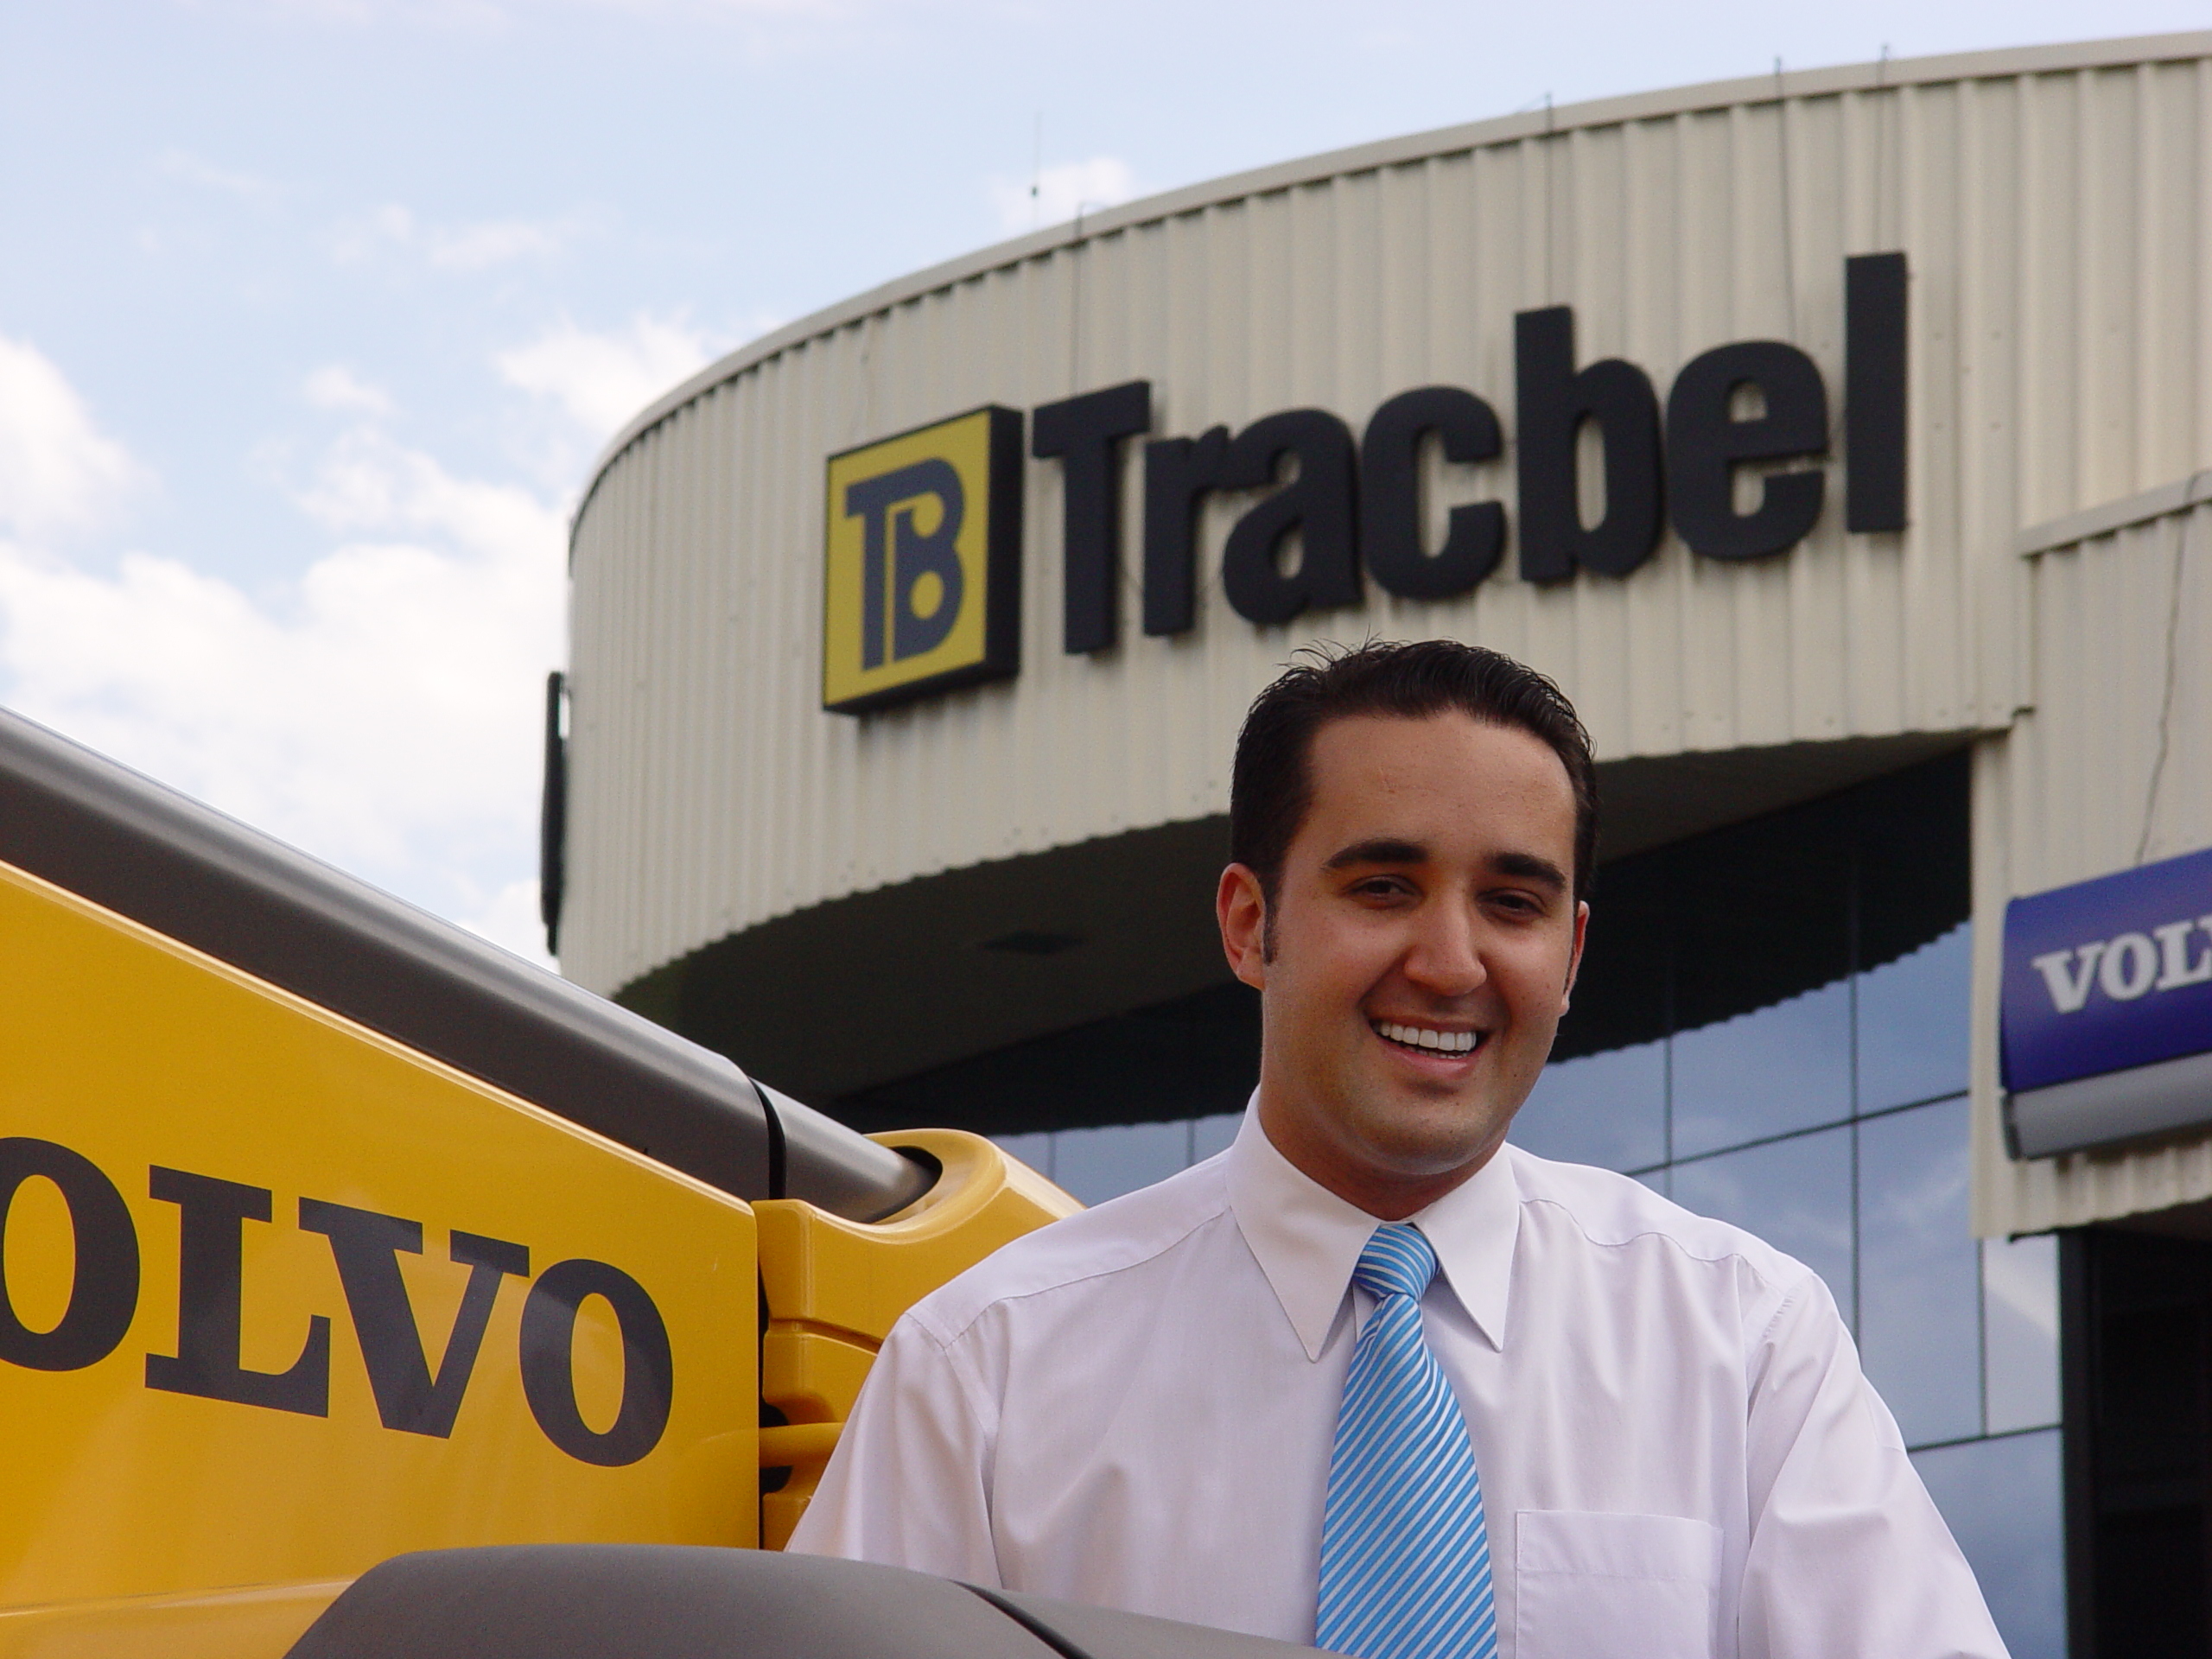 Novos negócios: Grupo Tracbel assume a distribuição de máquinas Volvo e SDLG no Maranhão, Ceará e Piauí